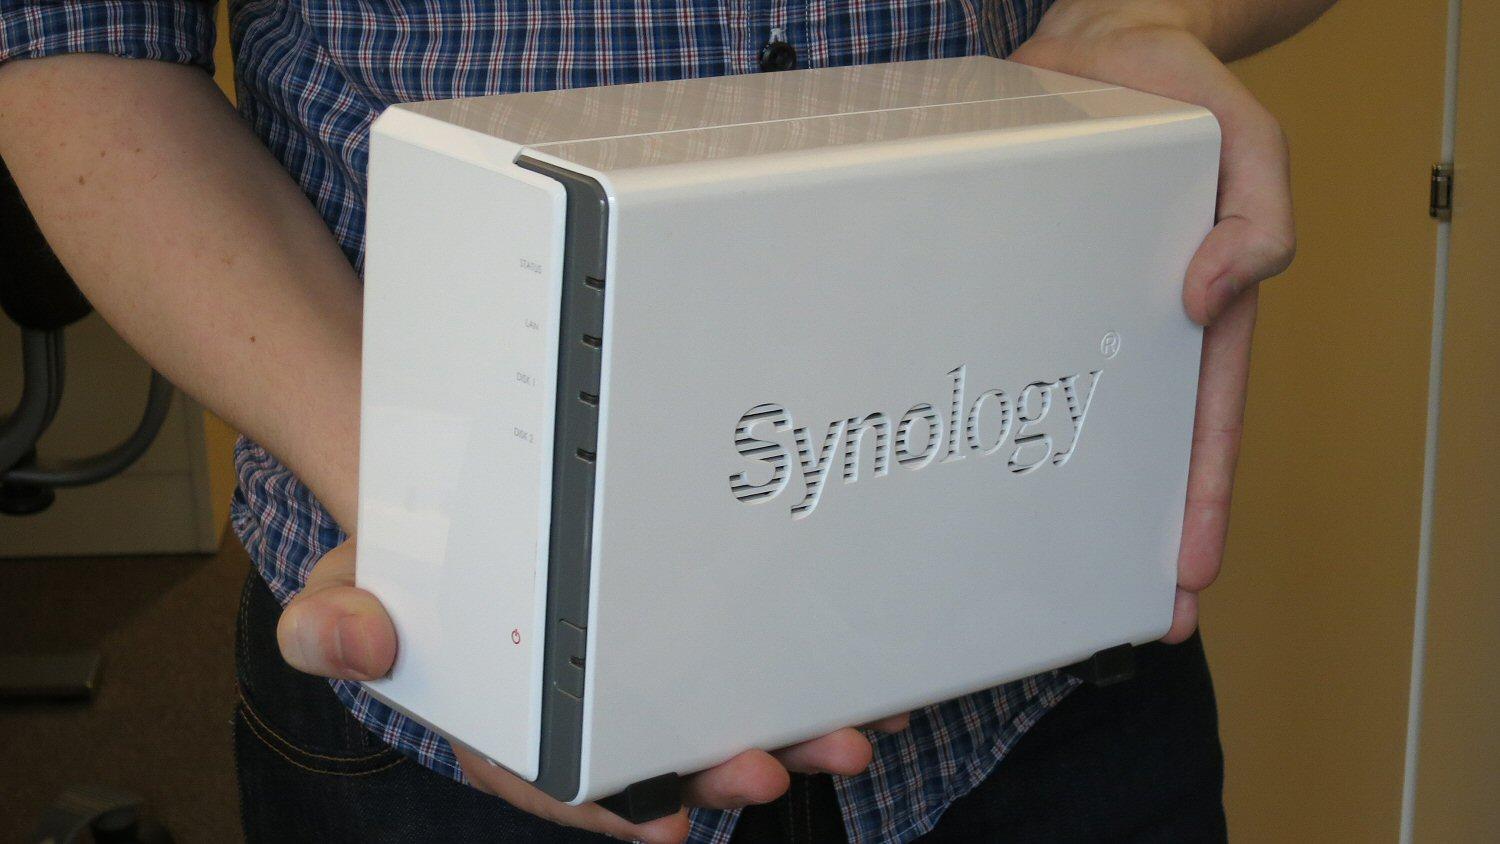 Liten og kjekk: Synology DS212j. Den har plass til to harddisker.Foto: Vegar Jansen, Hardware.no